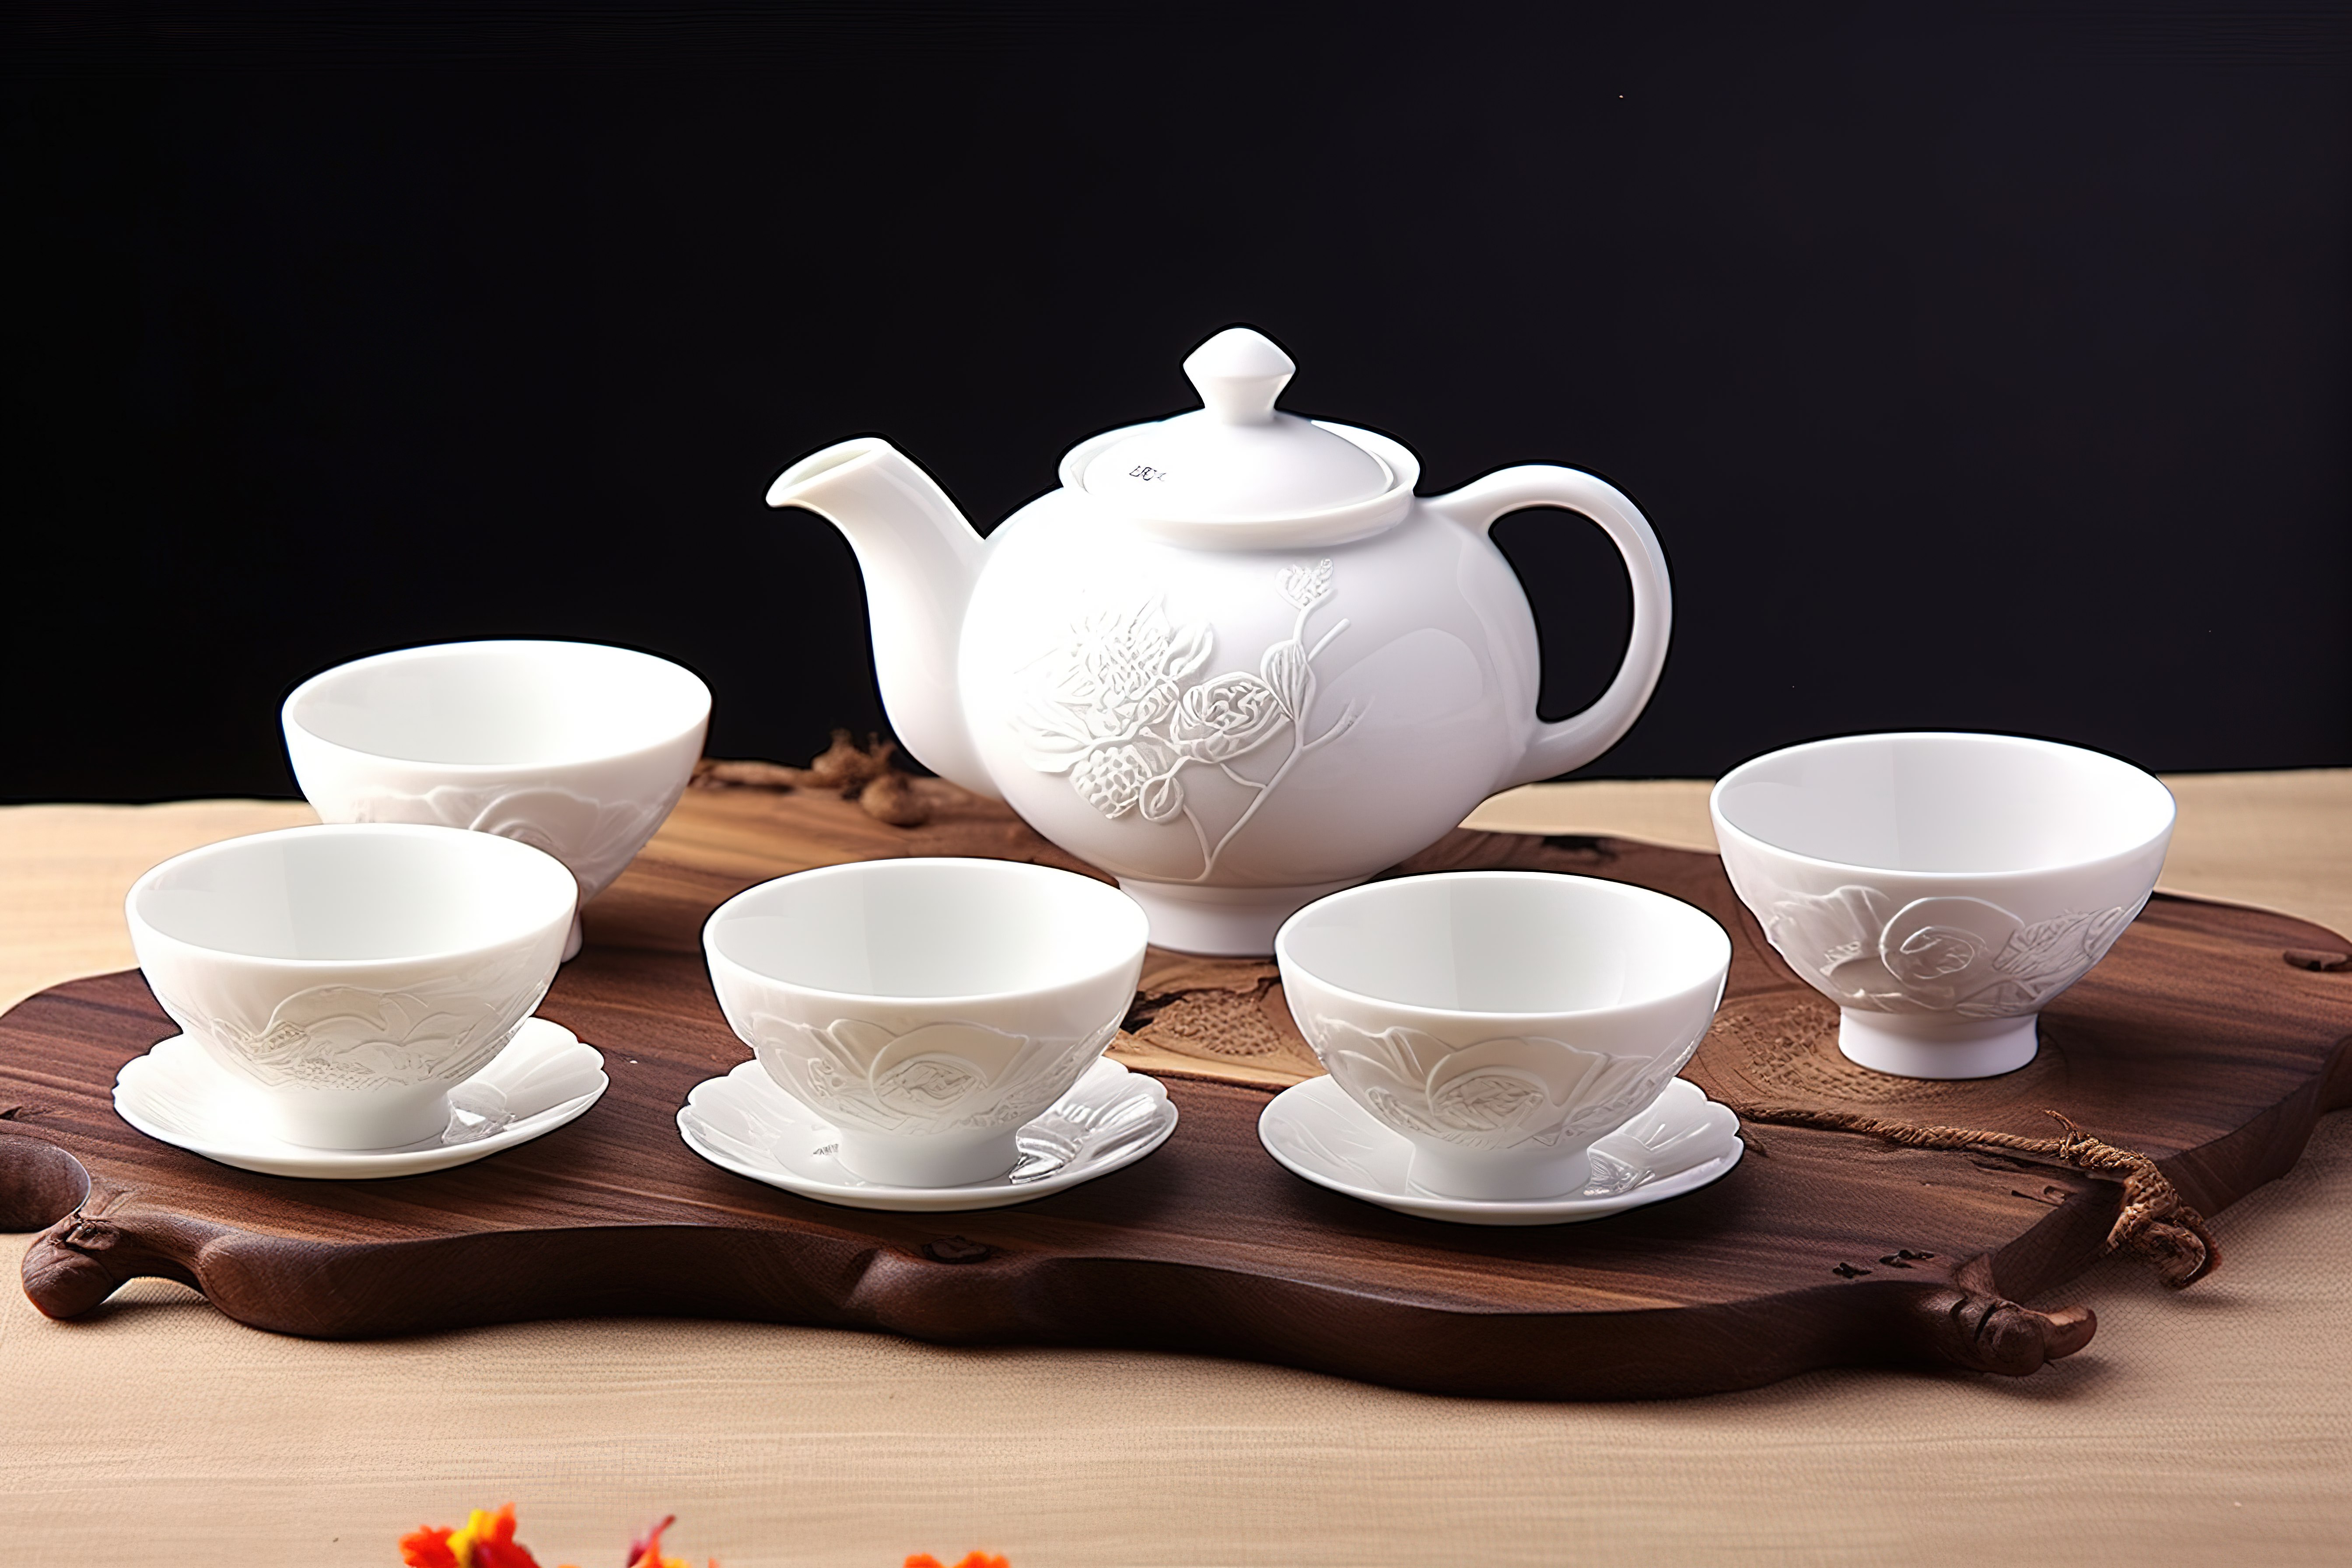 瓷器茶具 茶杯套装 陶瓷瓷器茶杯套装 陶瓷中式茶杯套装图片